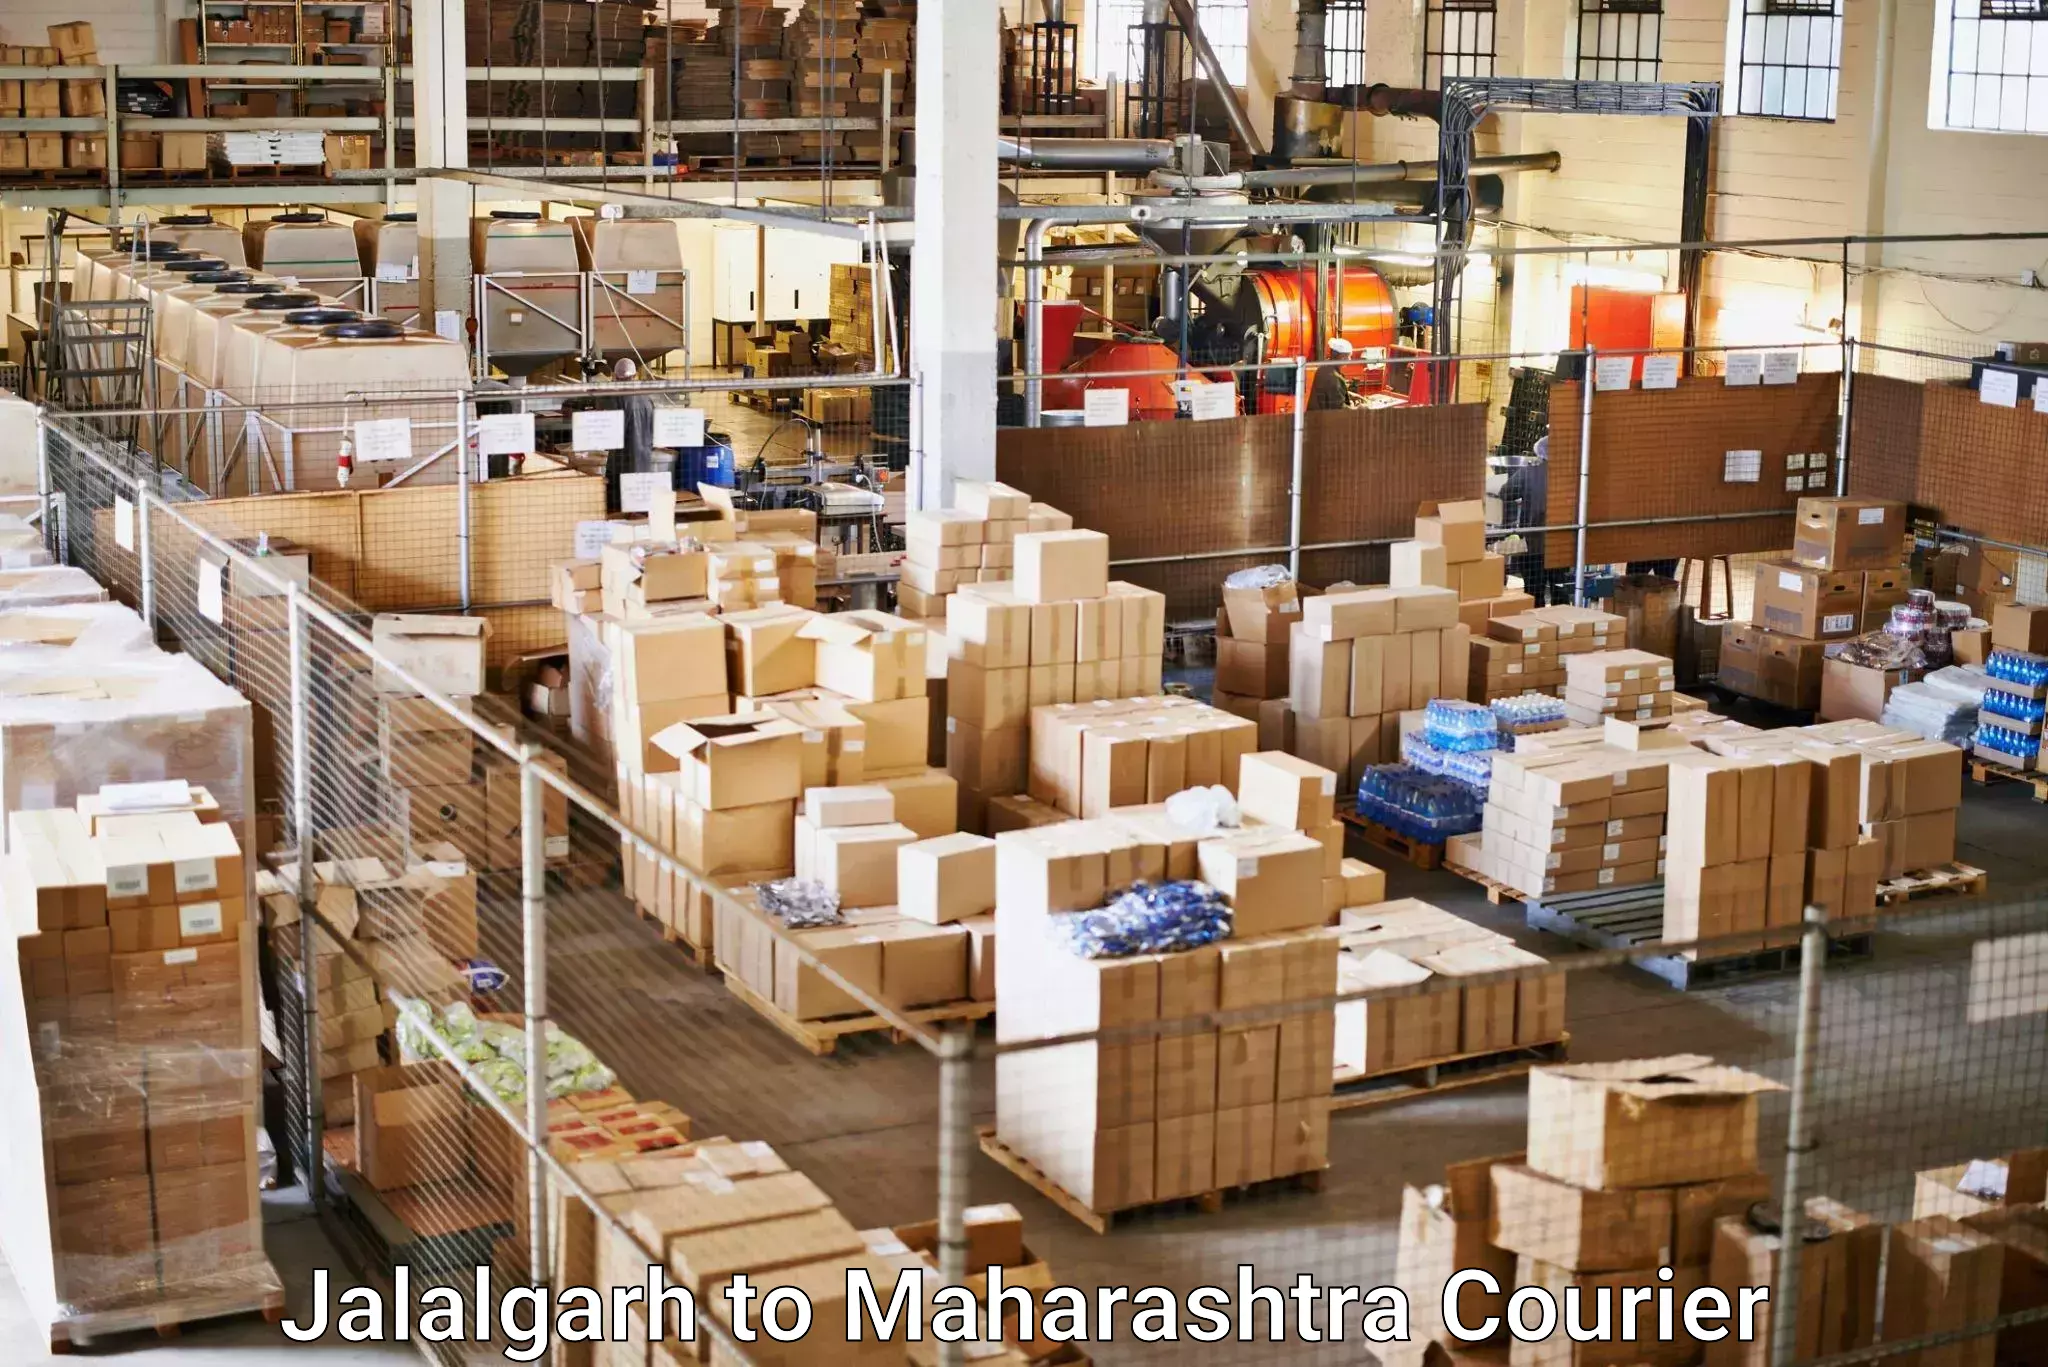 Doorstep delivery service Jalalgarh to Pandharpur